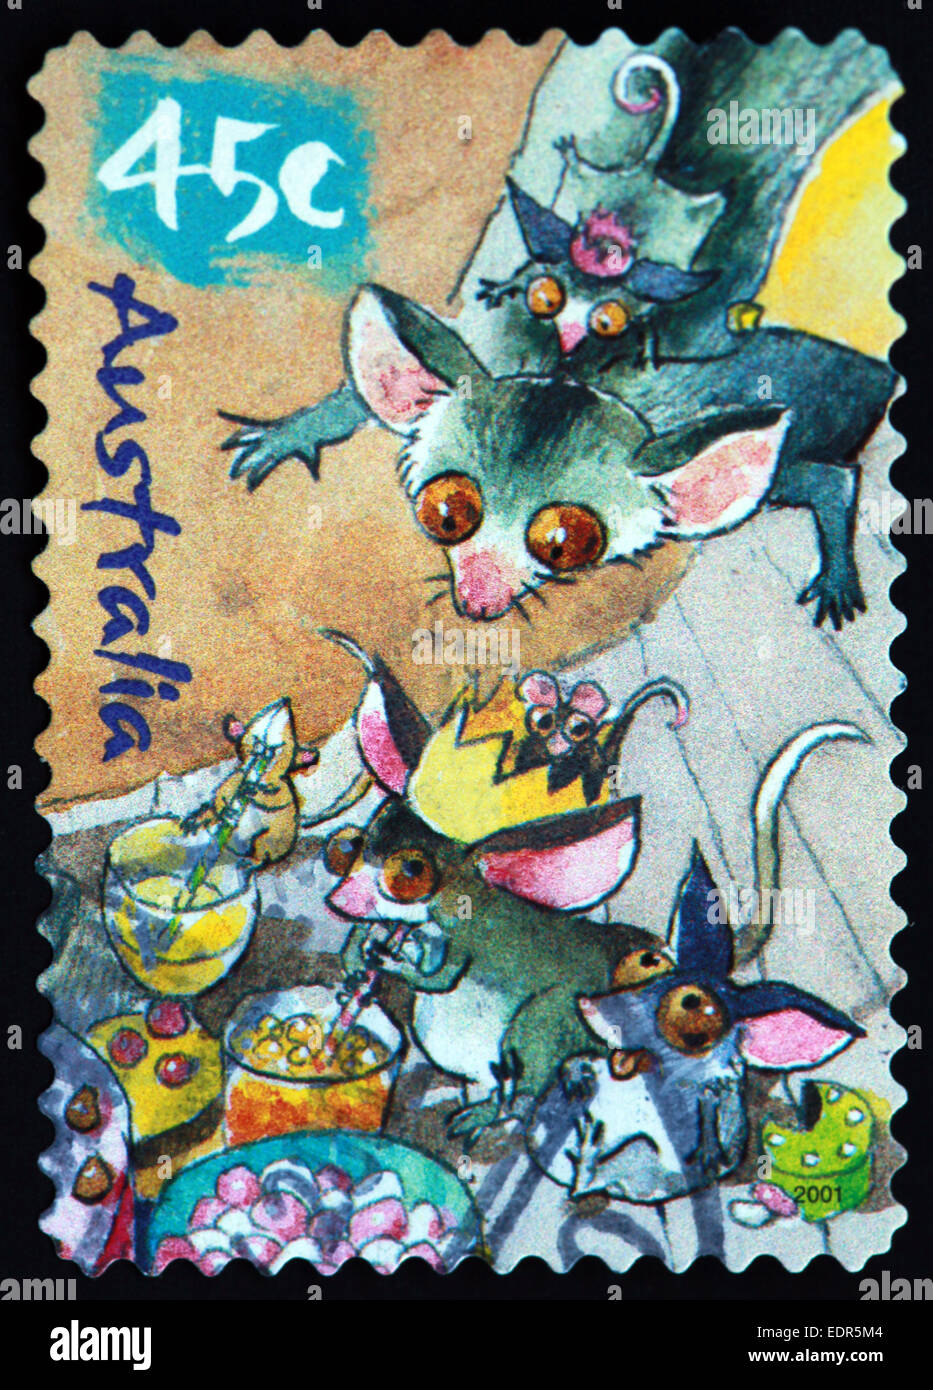 Verwendet und Poststempel Australien / Austrailian Stempel 45c cartoon-Maus Mäuse Stockfoto